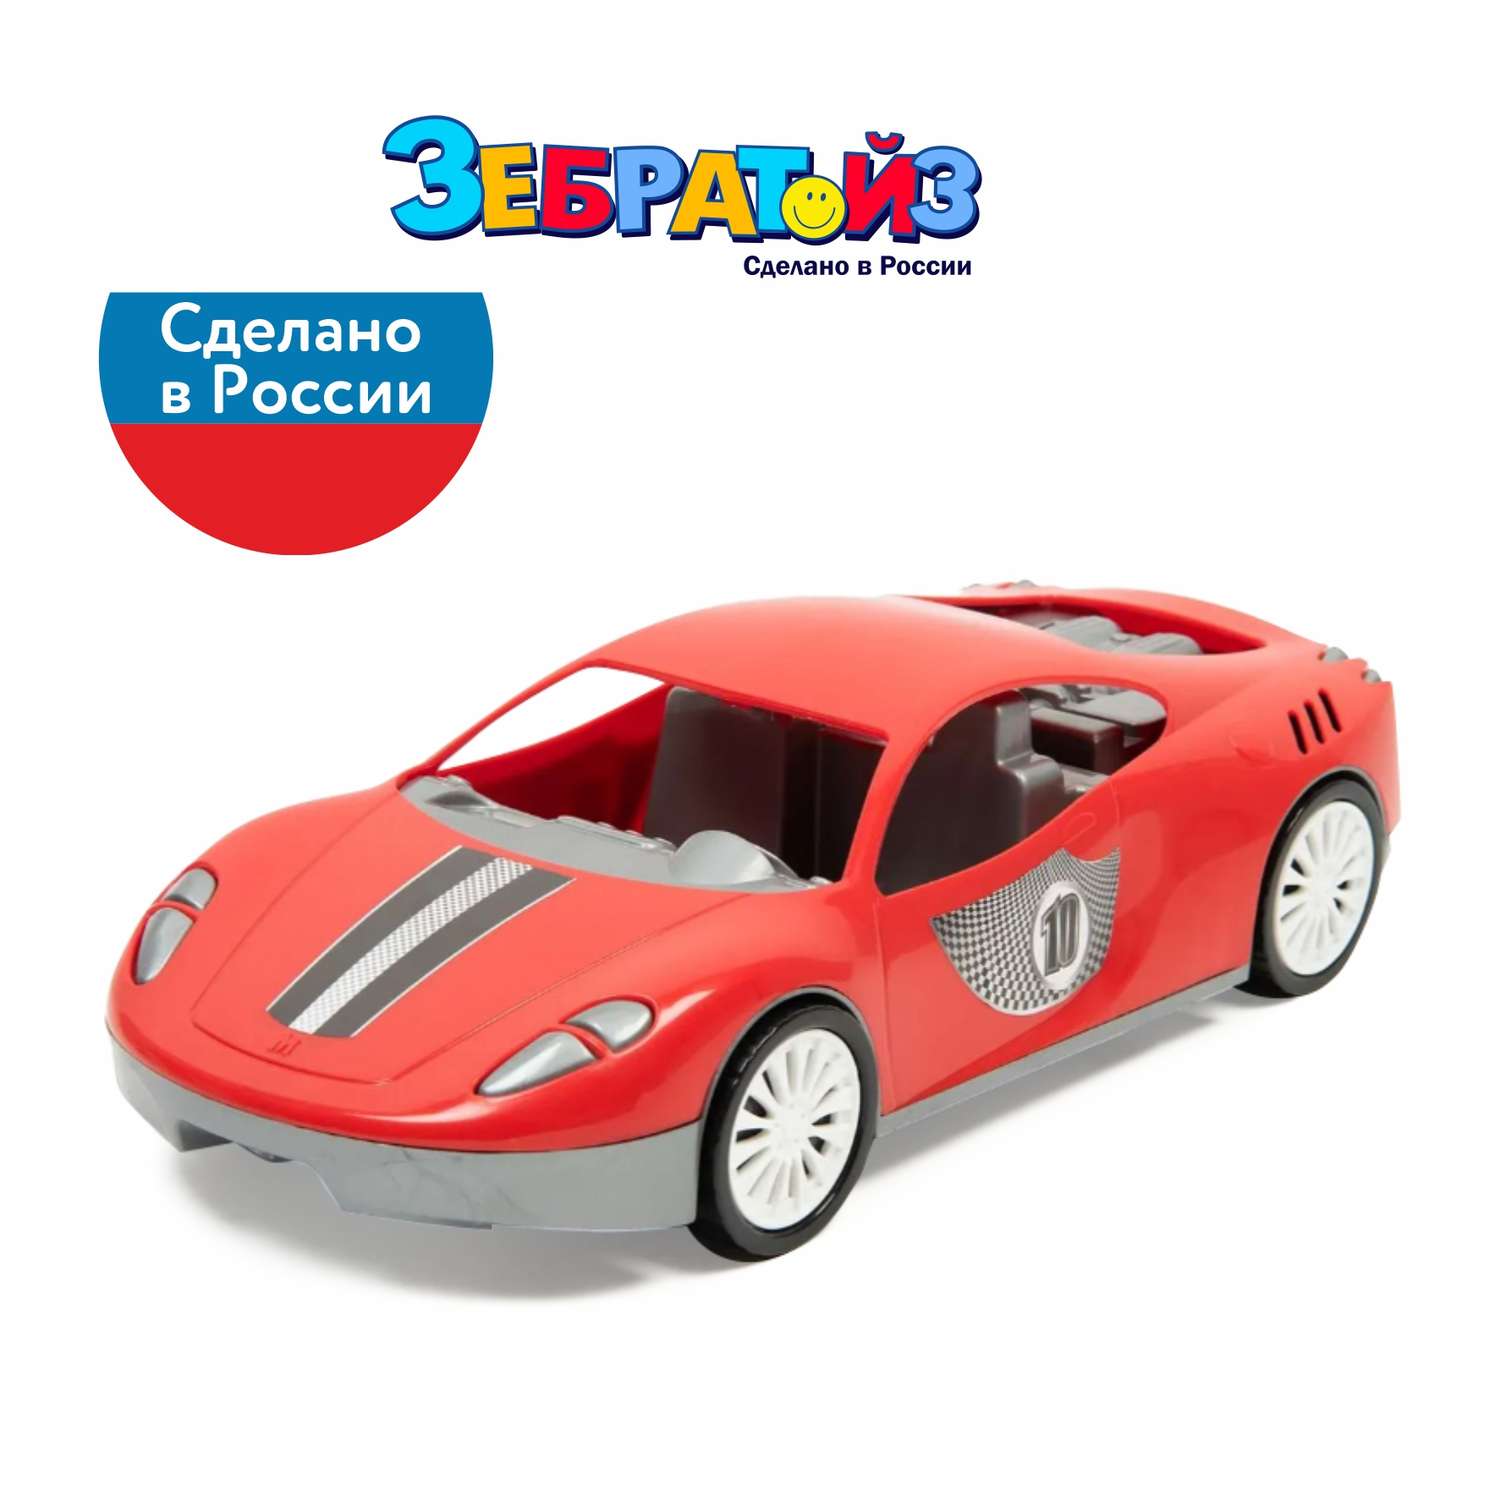 Автомобиль Zebratoys Спортивный Красный 15-11160 15-11160 - фото 7